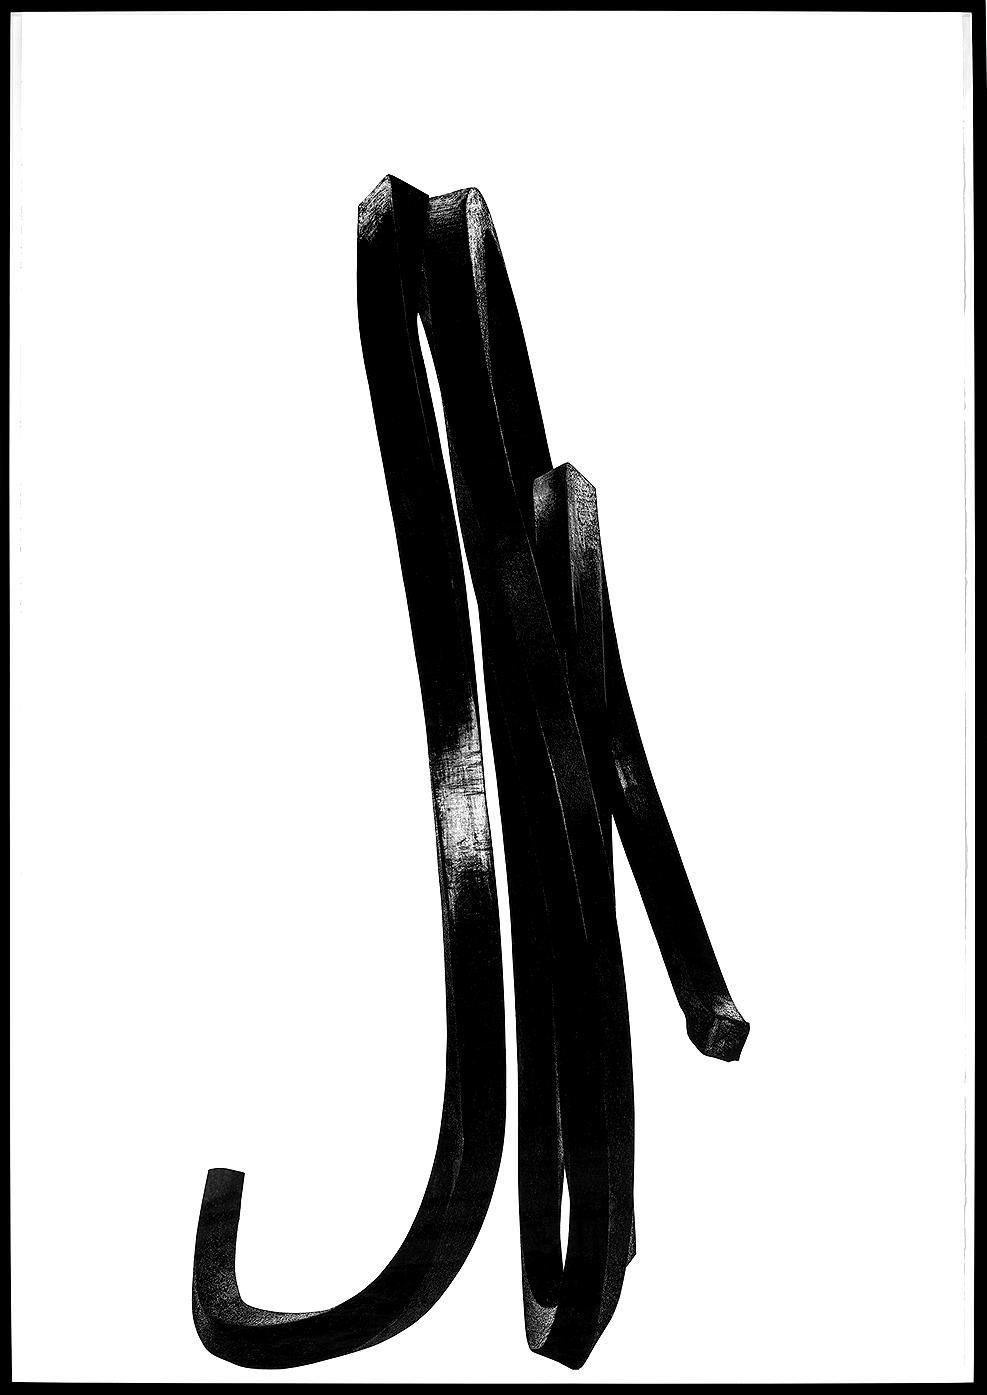 Dessin au fusain de Bernar Venet artiste contemporain noir et blanc